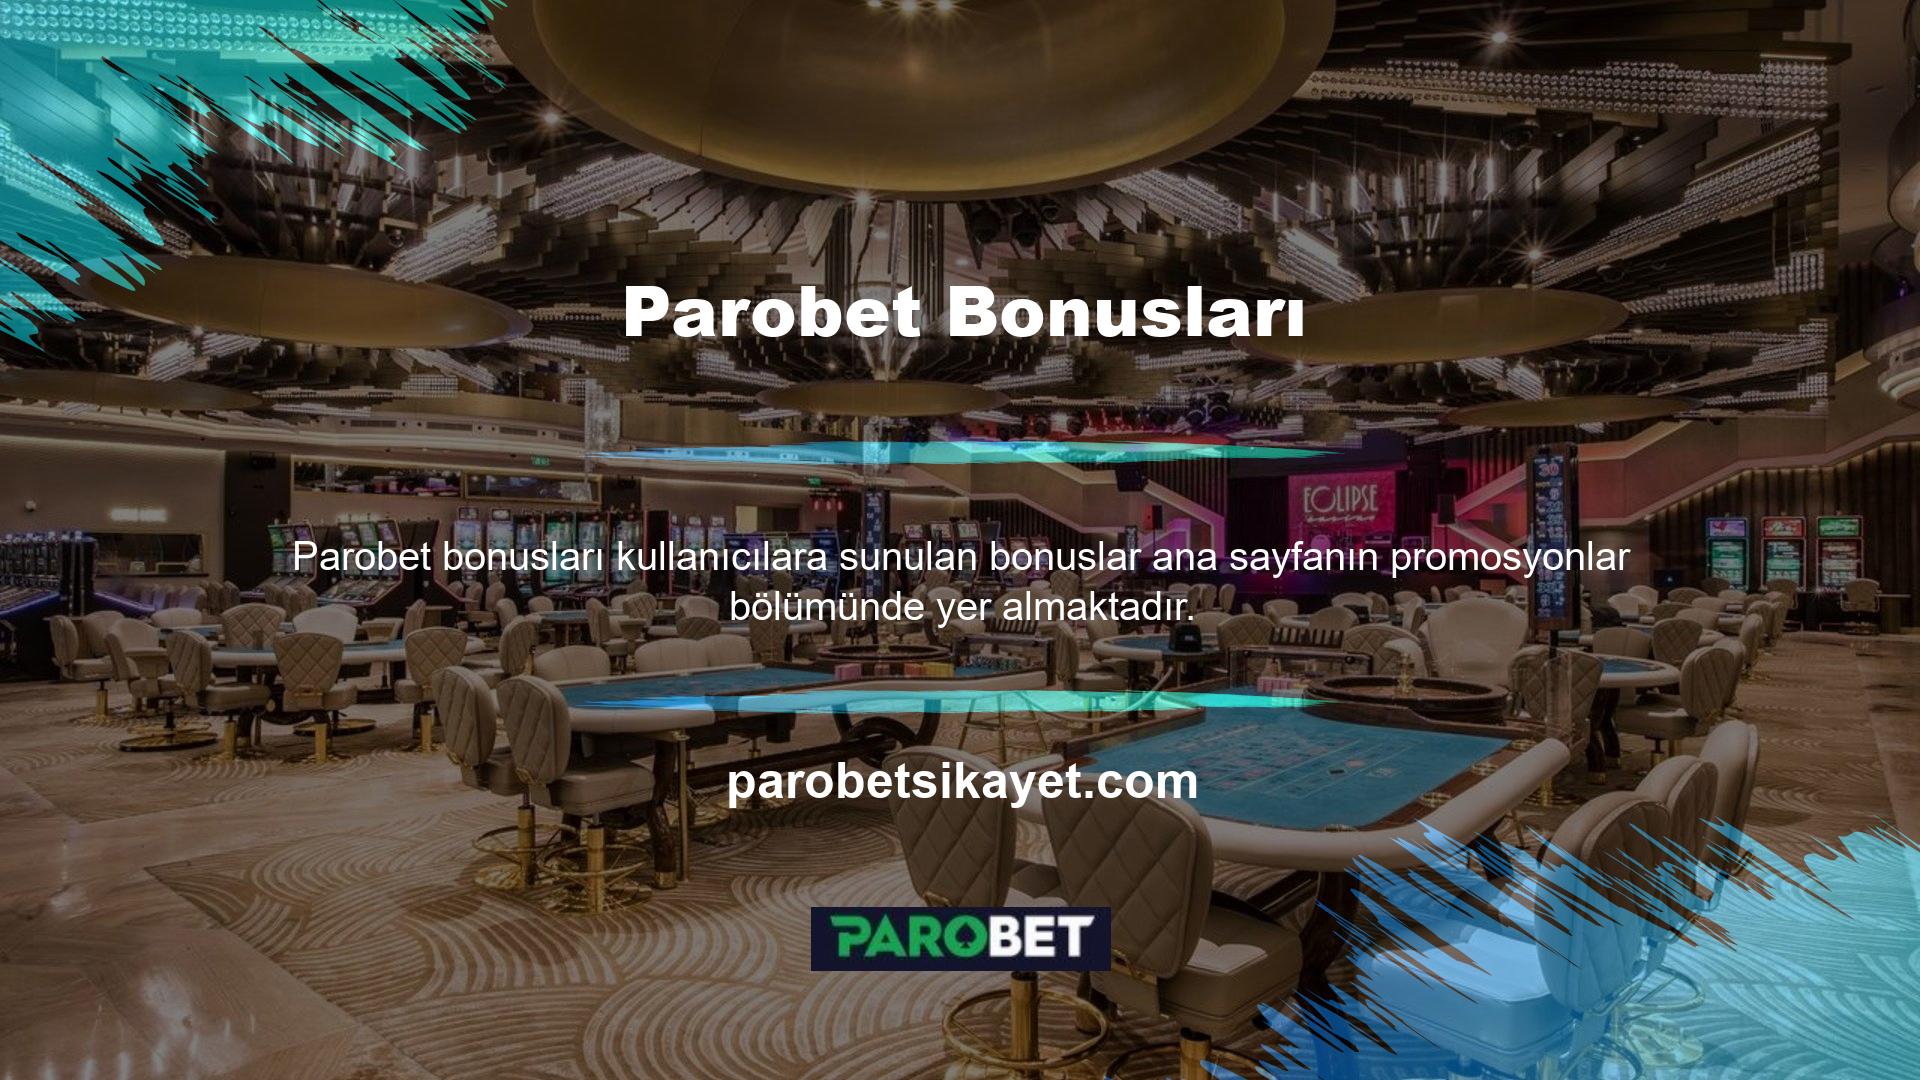 Sitenin sunduğu şartları sağlayan ve sitenin sunduğu bonuslardan yararlanarak casino geliri elde edebilen tüm kullanıcılar tarafından kullanılabilir